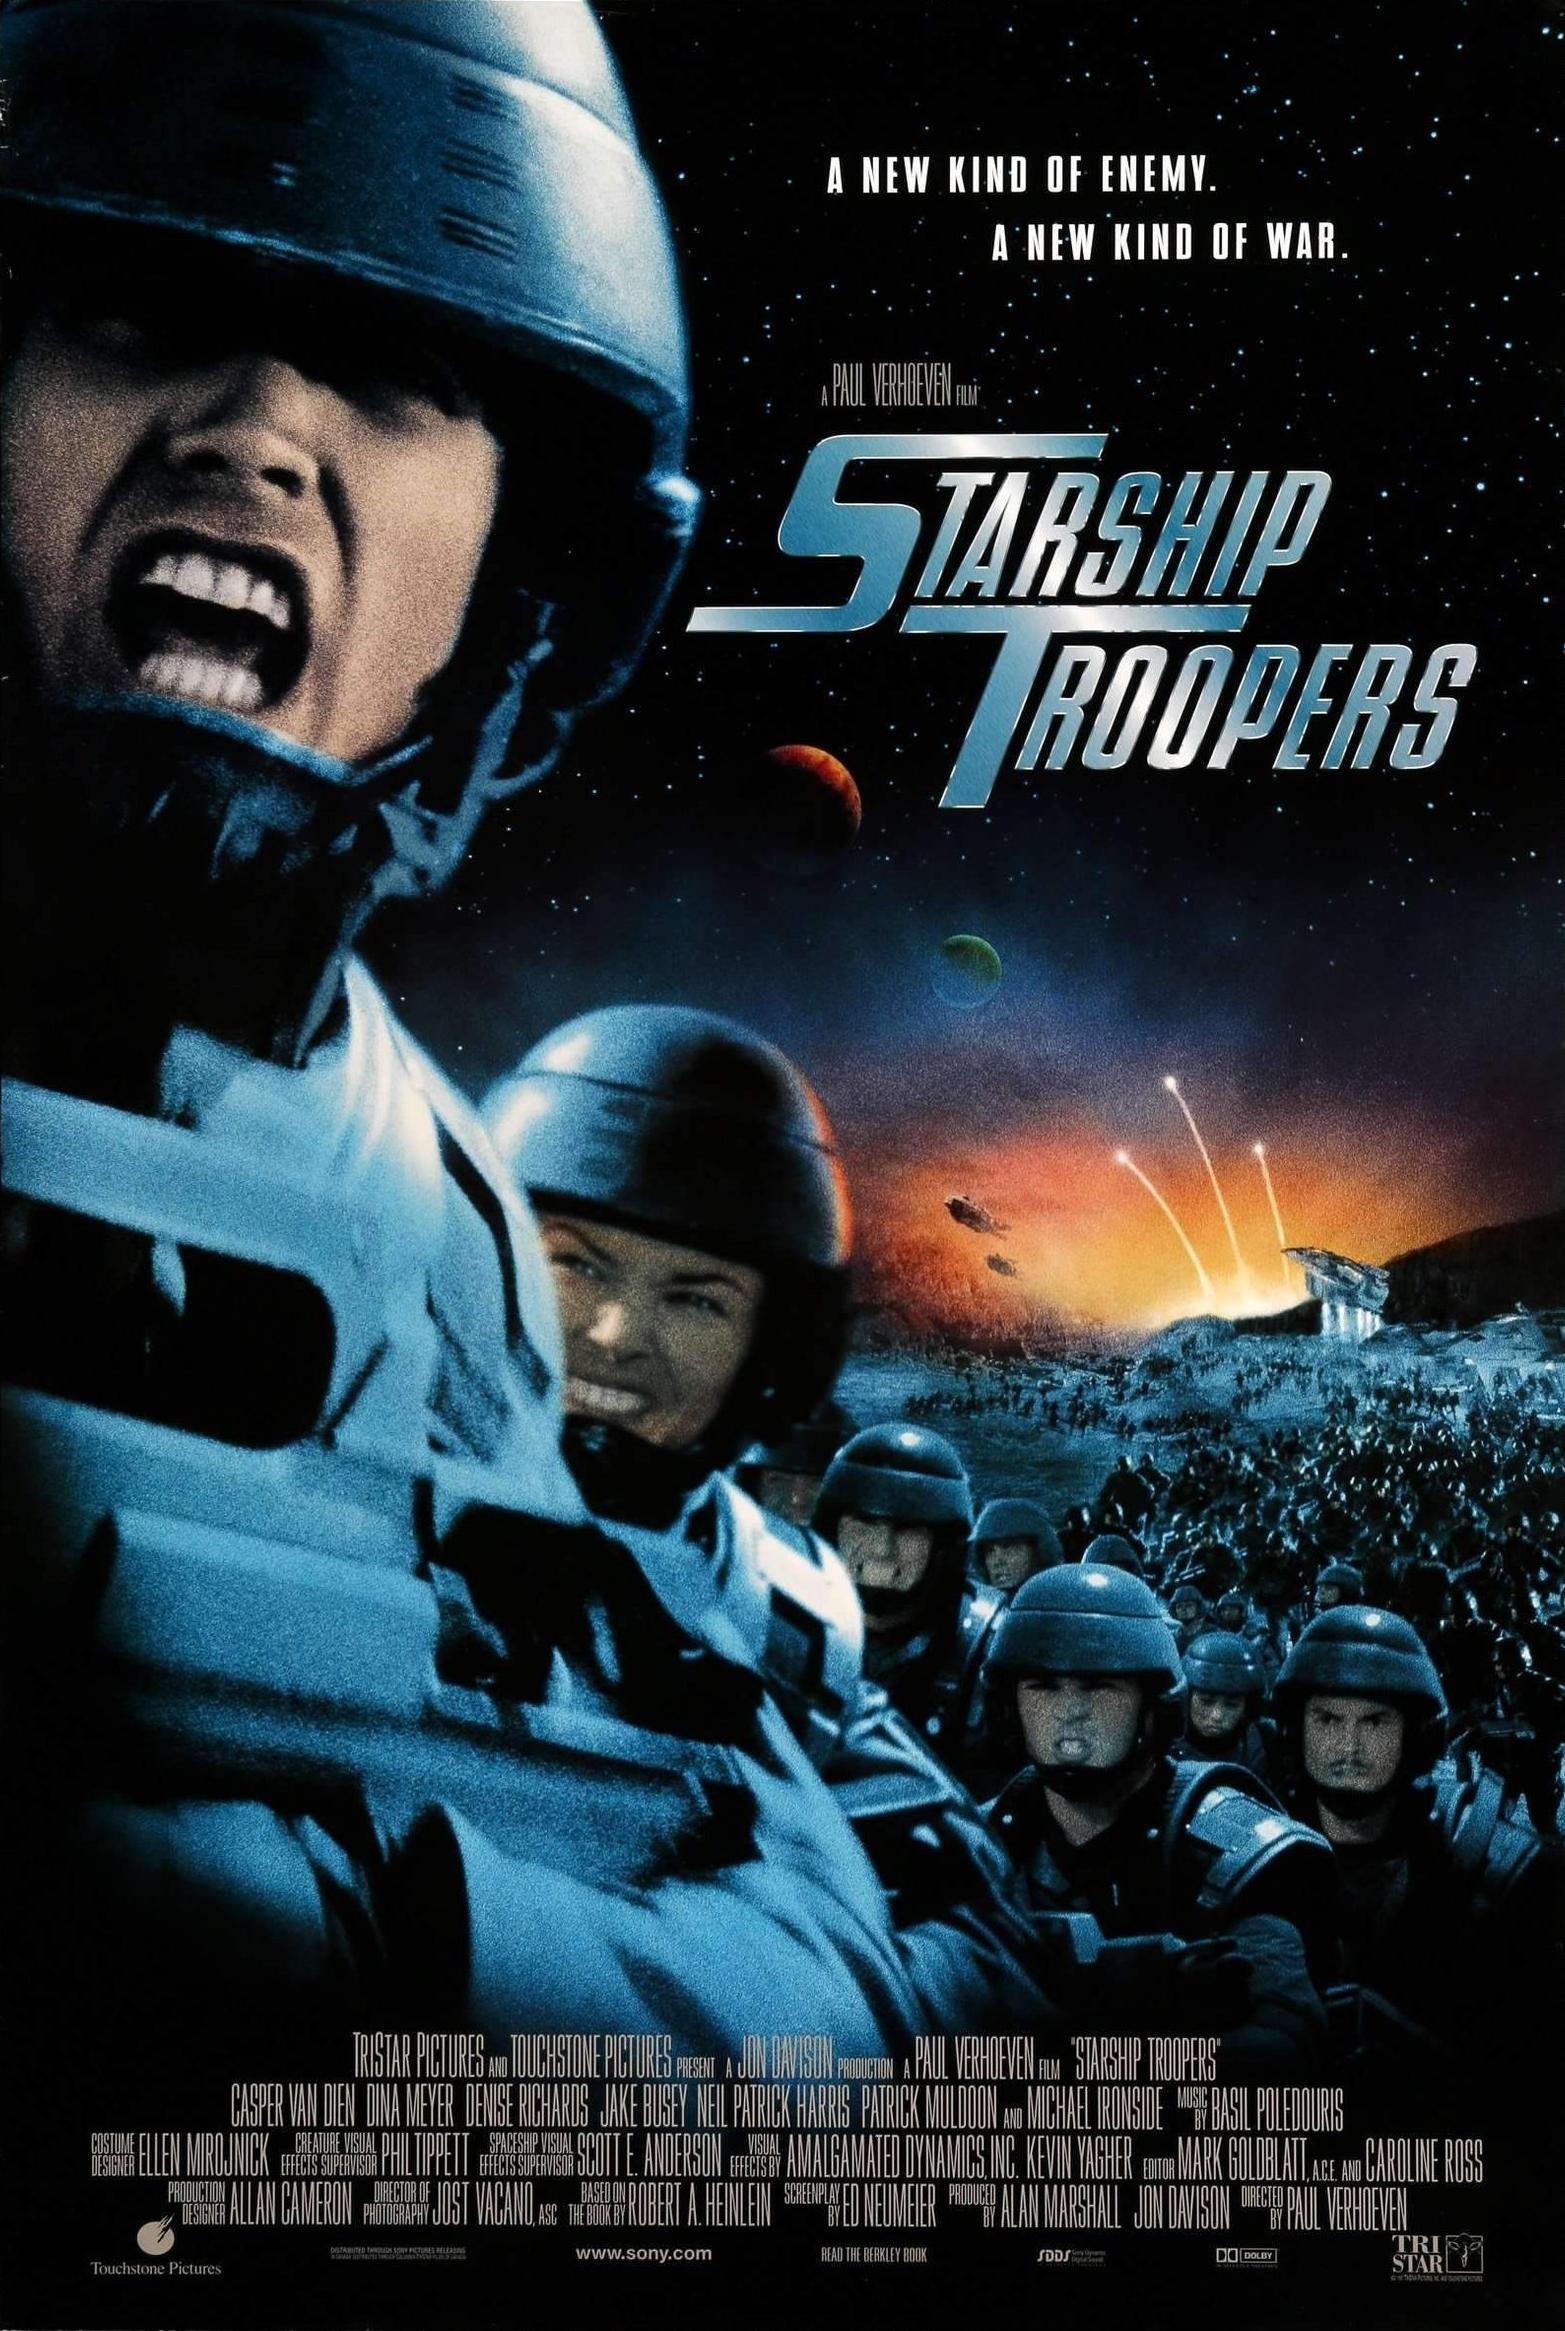 Art for Starship Trooper's Recruitment by Starship Trooper's Recruitment